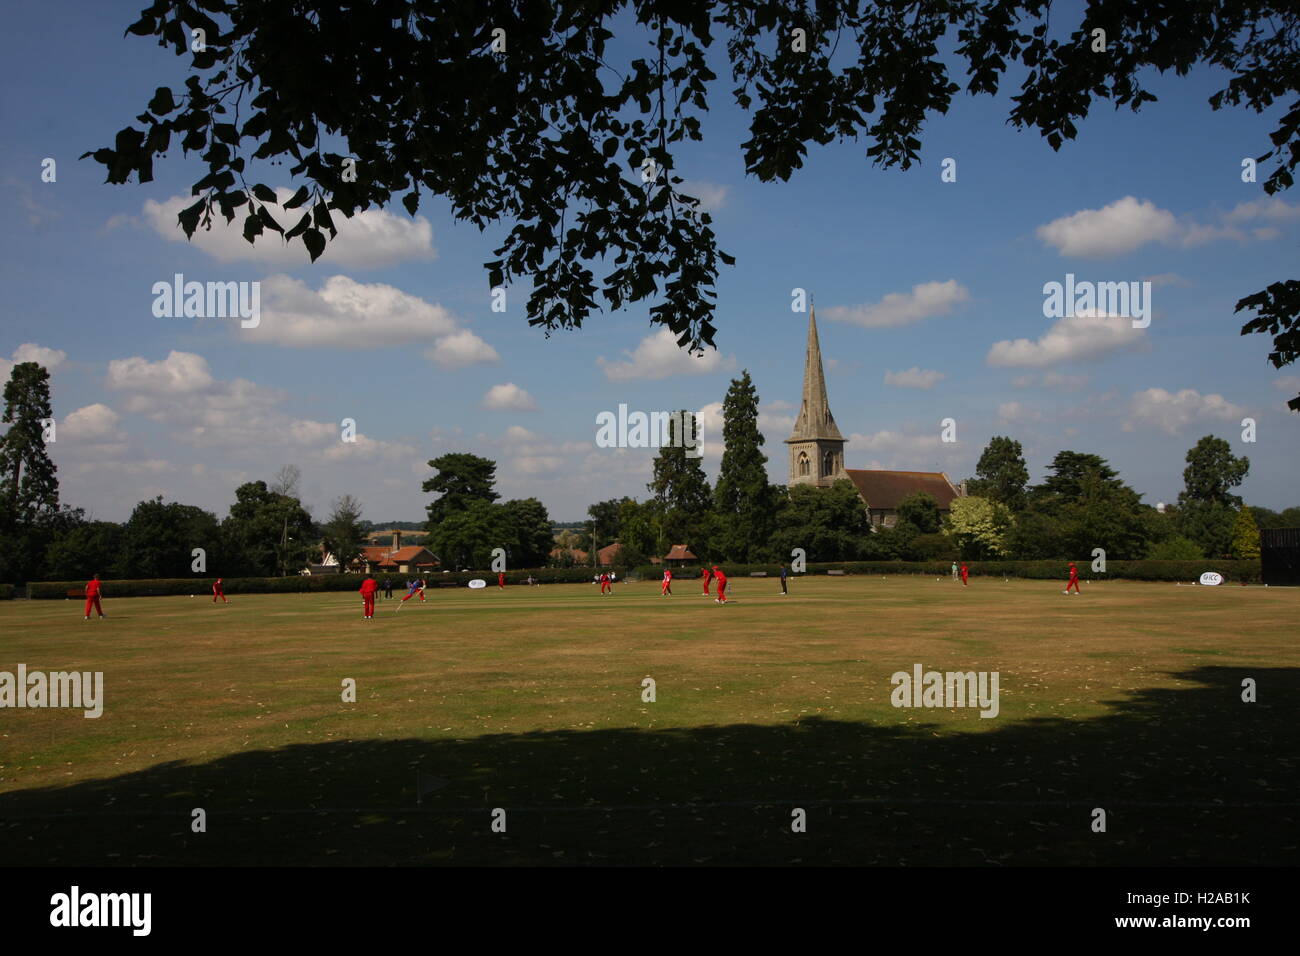 1 août 2014. Mistley Cricket Club dans l'Essex, Photo de Tony Henshaw Banque D'Images